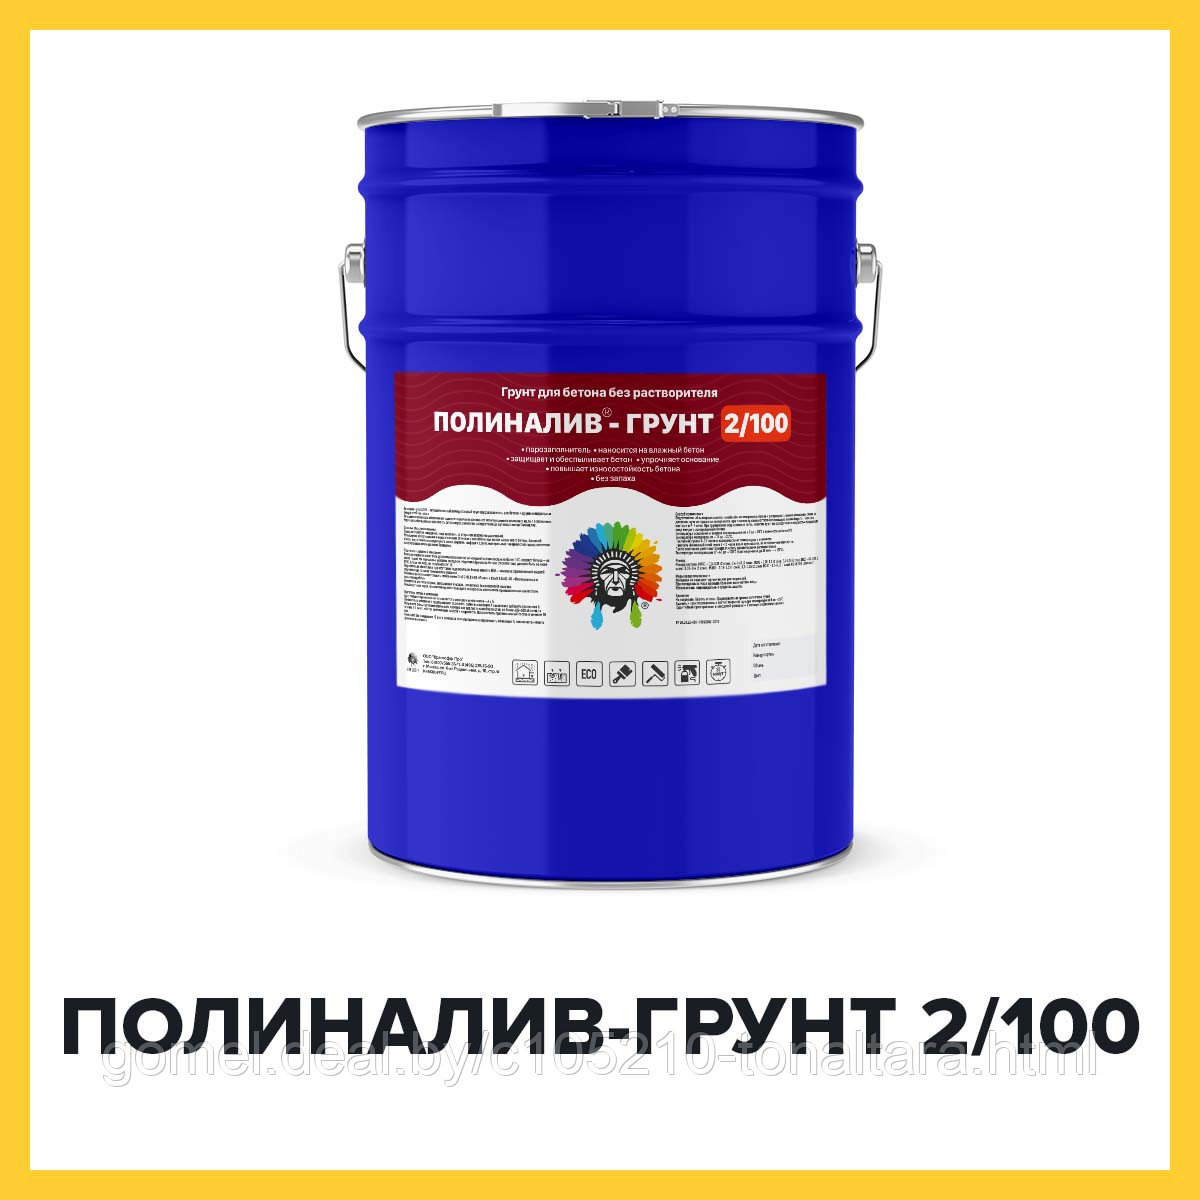 ПОЛИНАЛИВ-ГРУНТ 2/100 (Kraskoff Pro) – полиуретановый грунт-порозаполнитель для наливных полов, без